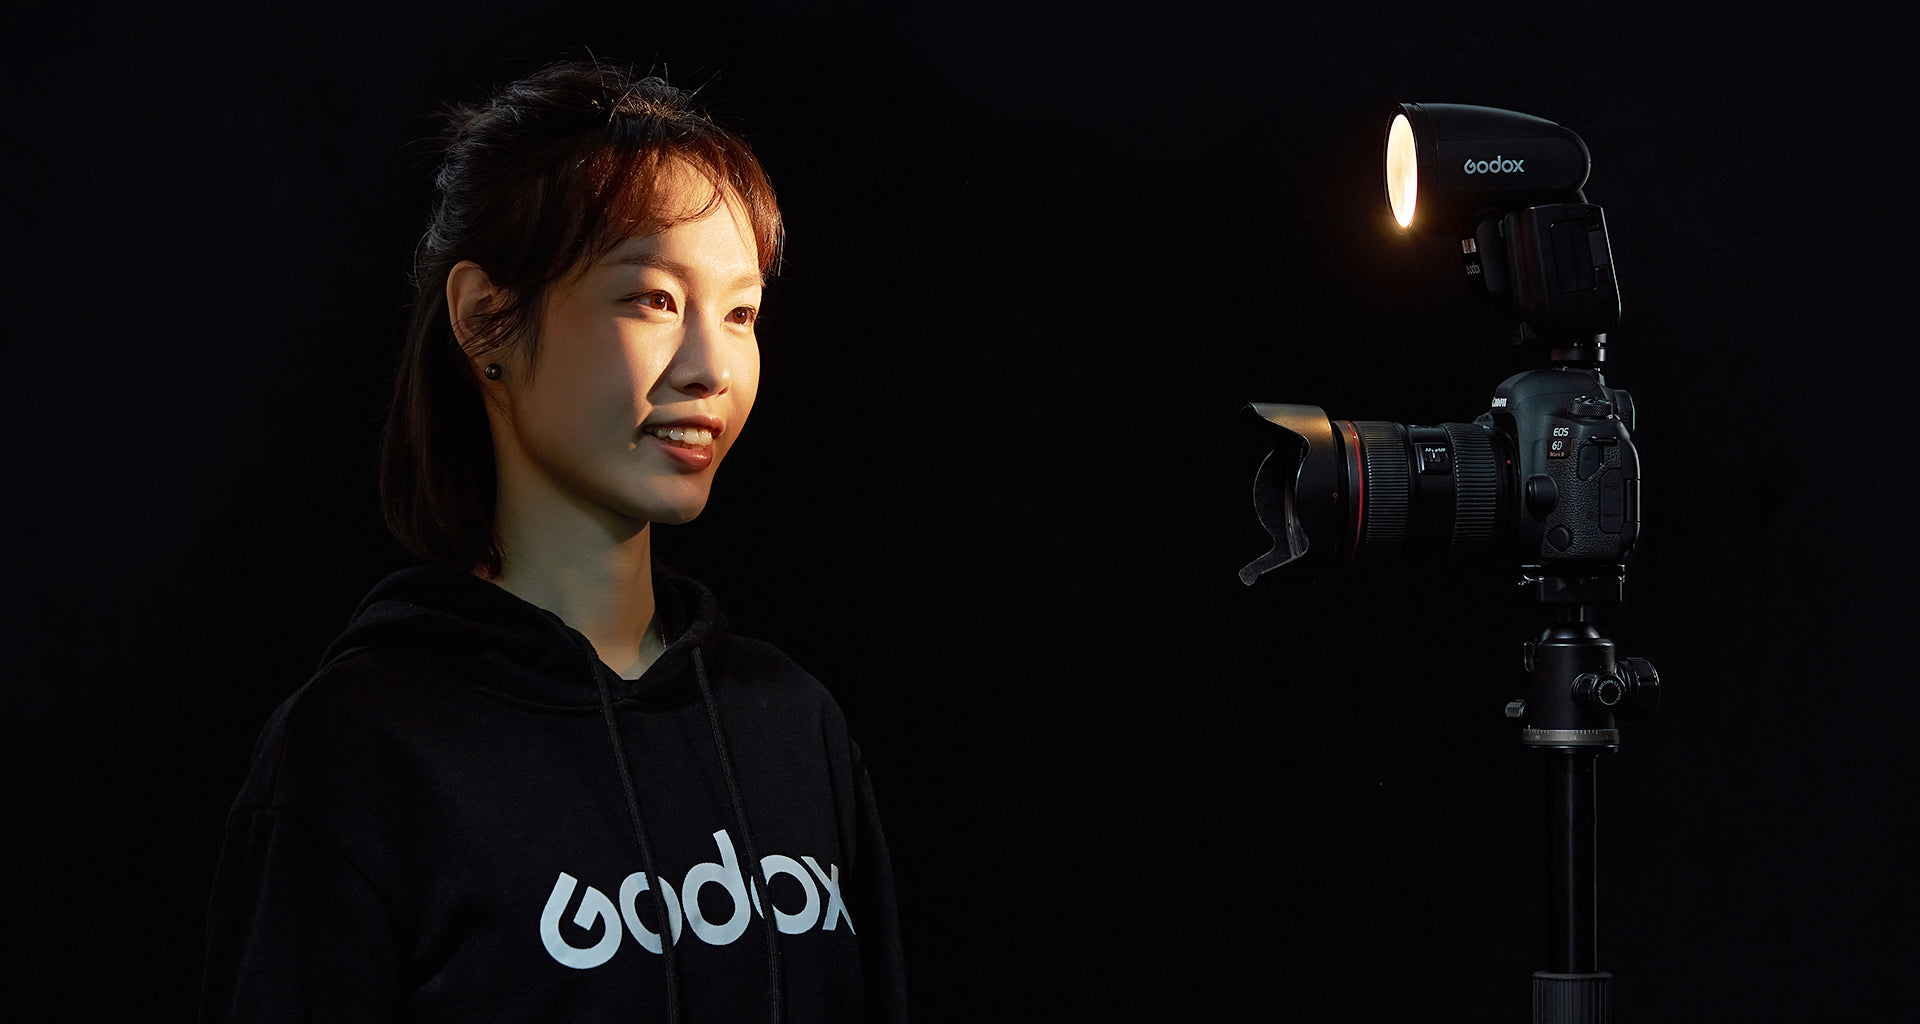 Godox V1Pro's LED Modelling Light being used to illuminate a model